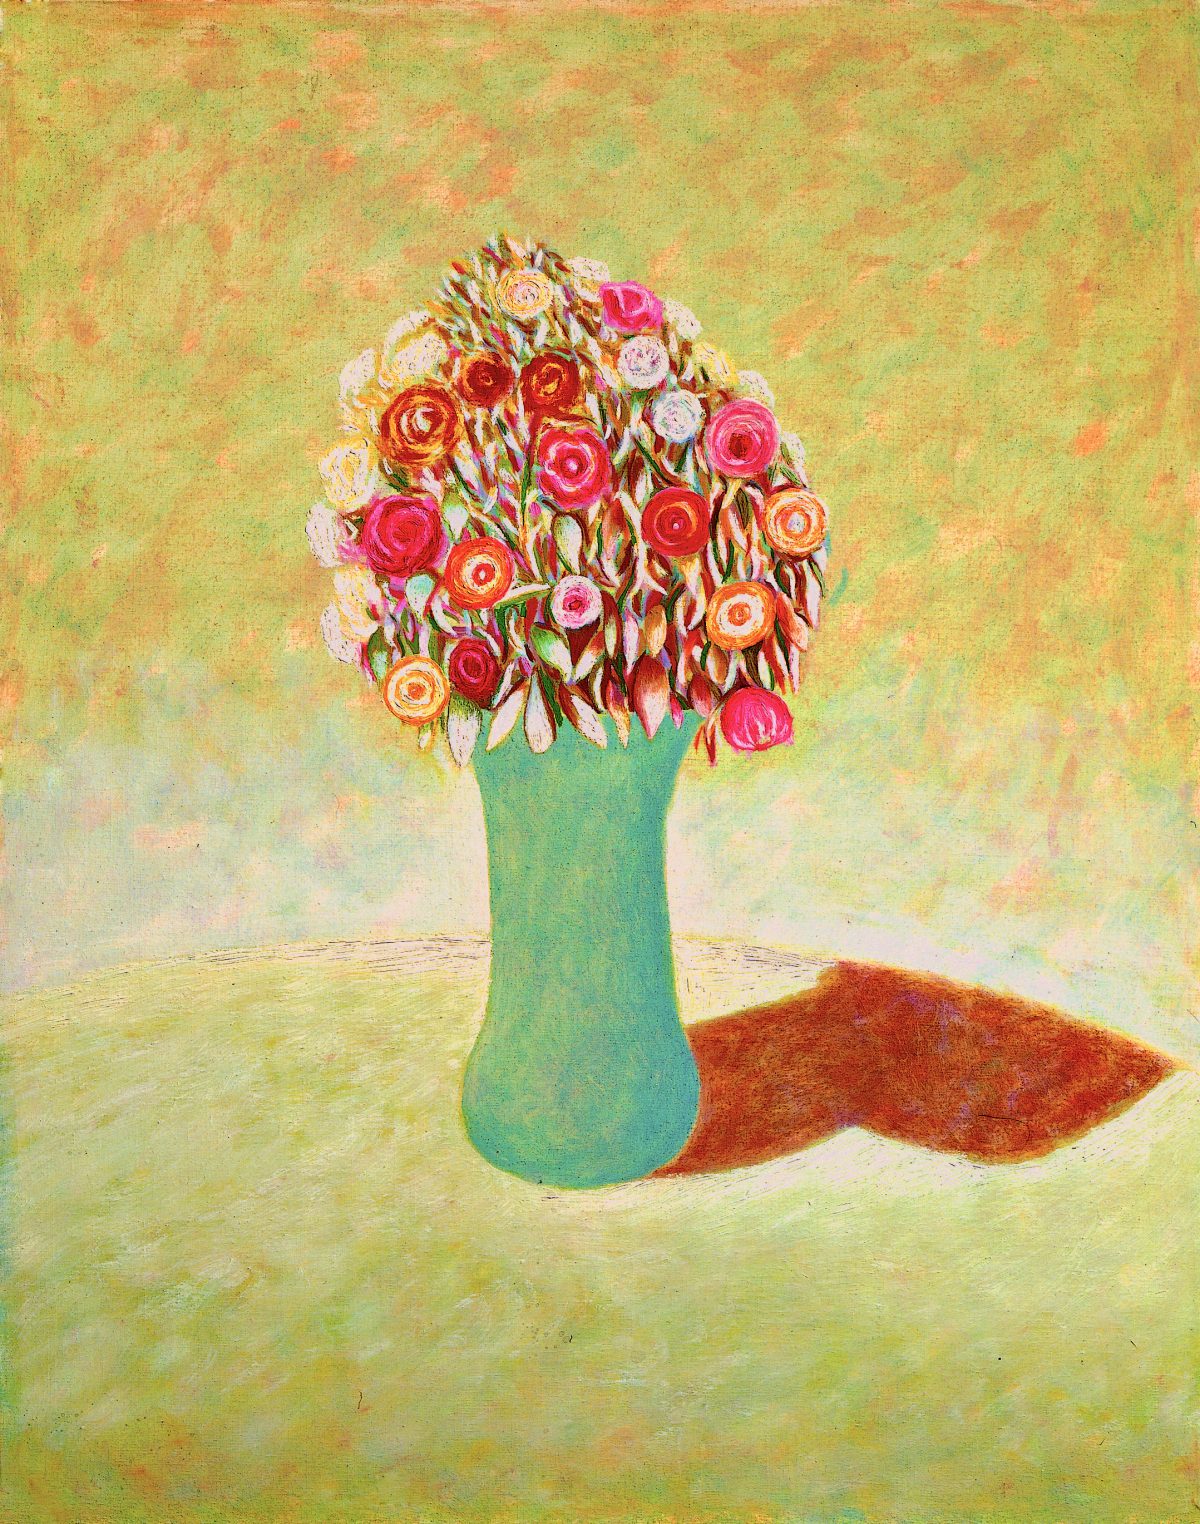 Vaso e fiori, ca. 1990
Olio su tela
50 x 40 cm,
NMV122